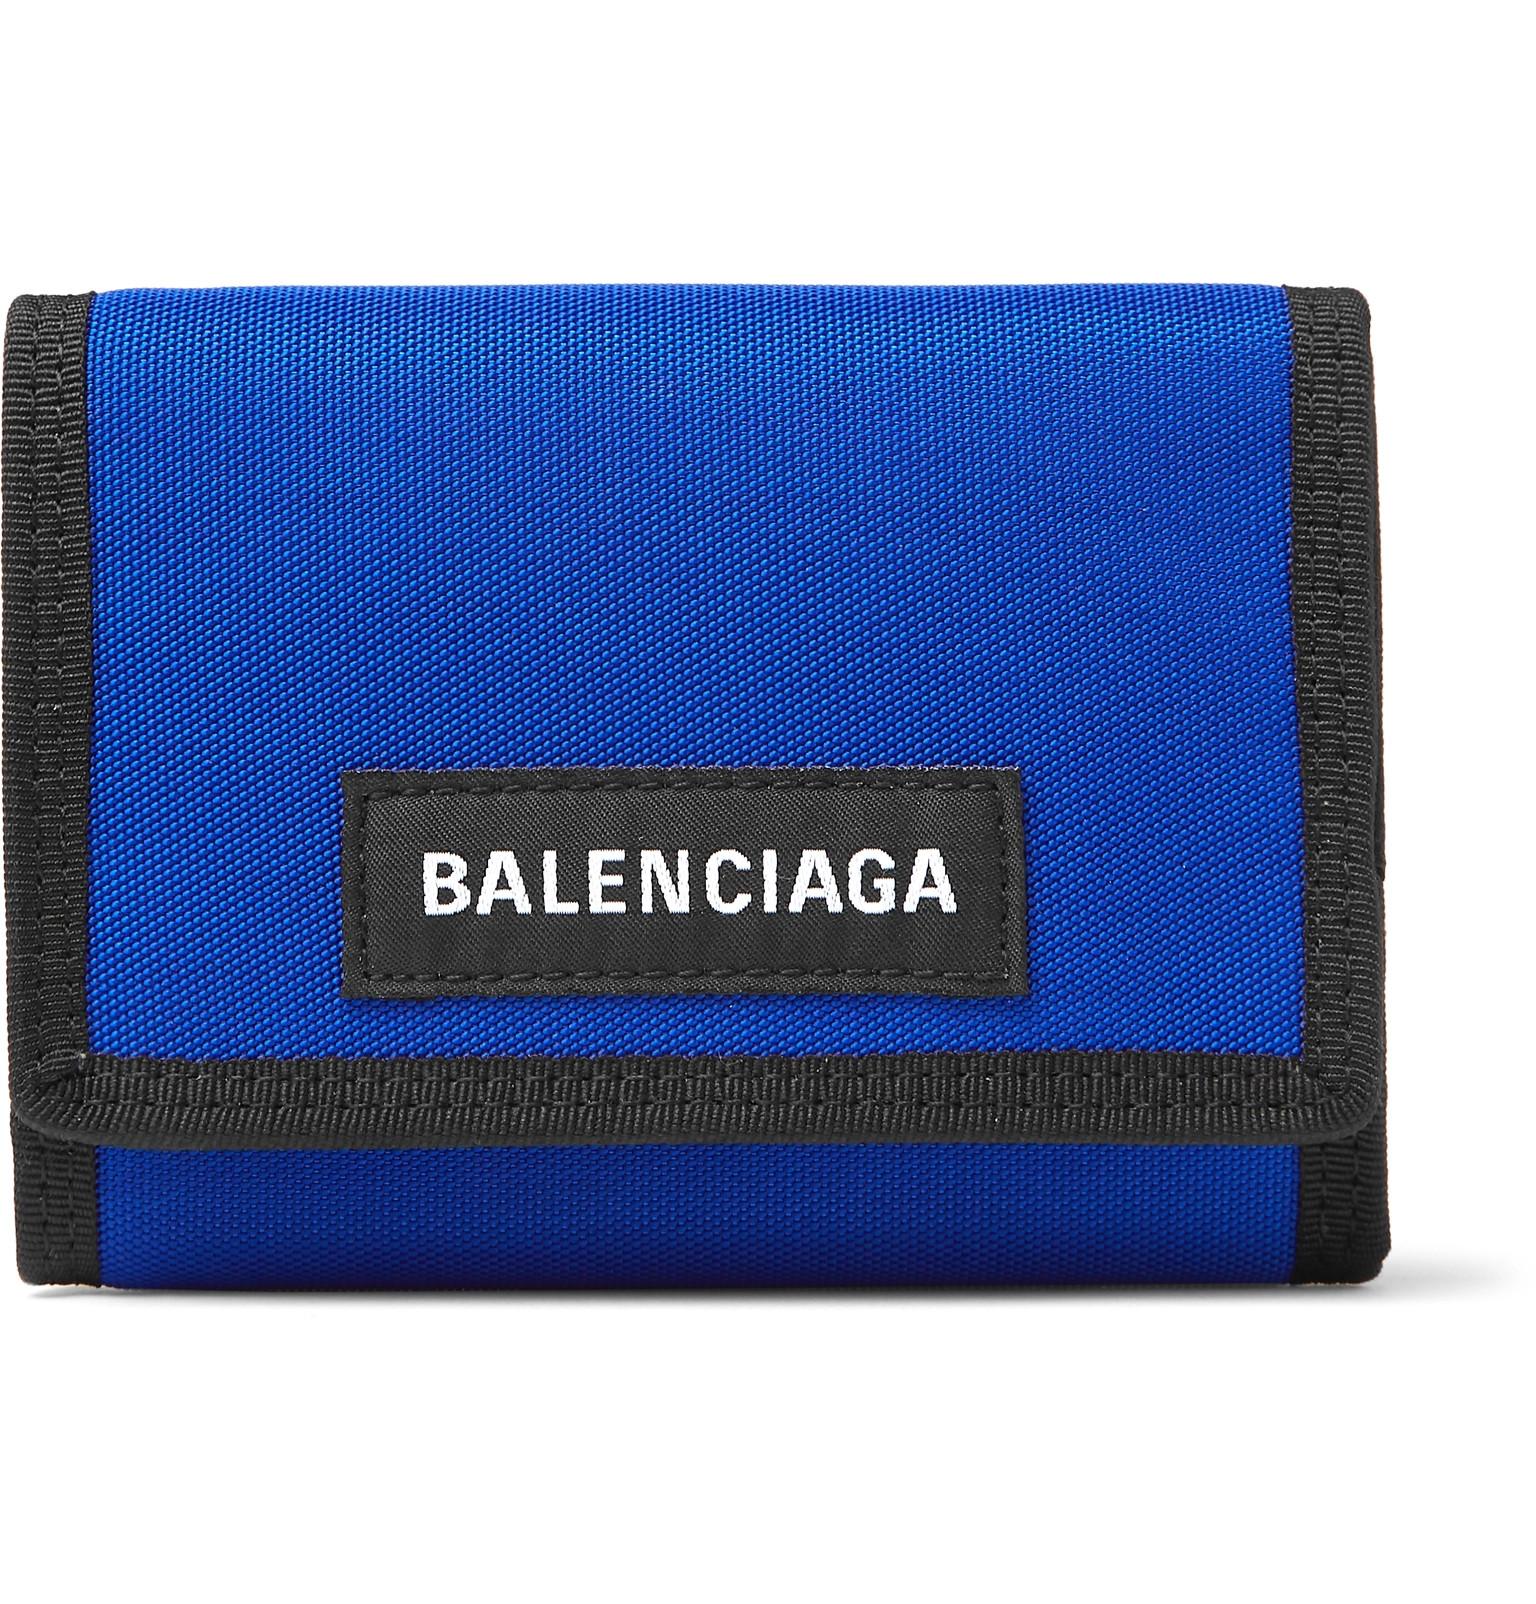 balenciaga wallet blue